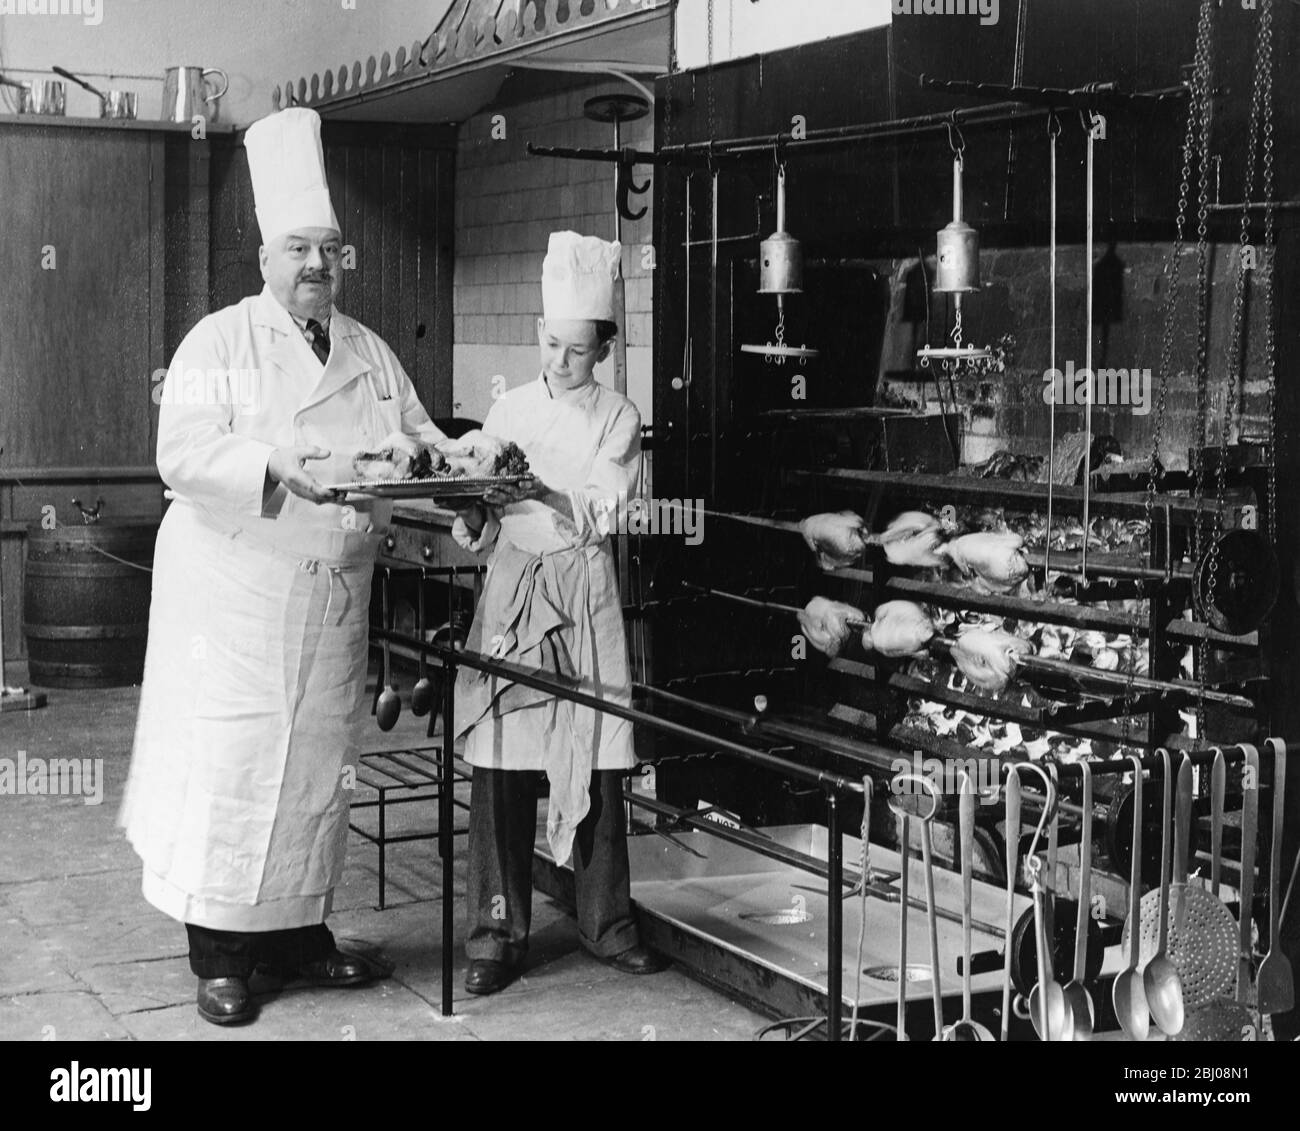 A.H. Cadier, chef principal au Pavillon de Brighton, est remis de fausses poulets par le chef junior Lloyd Payne pour démontrer l'exploitation des énormes cheminées ouvertes de 1825 dans les cuisines du Pavillon Royal. Brighton, Sussex, Angleterre - 16 juillet 1951 - Banque D'Images